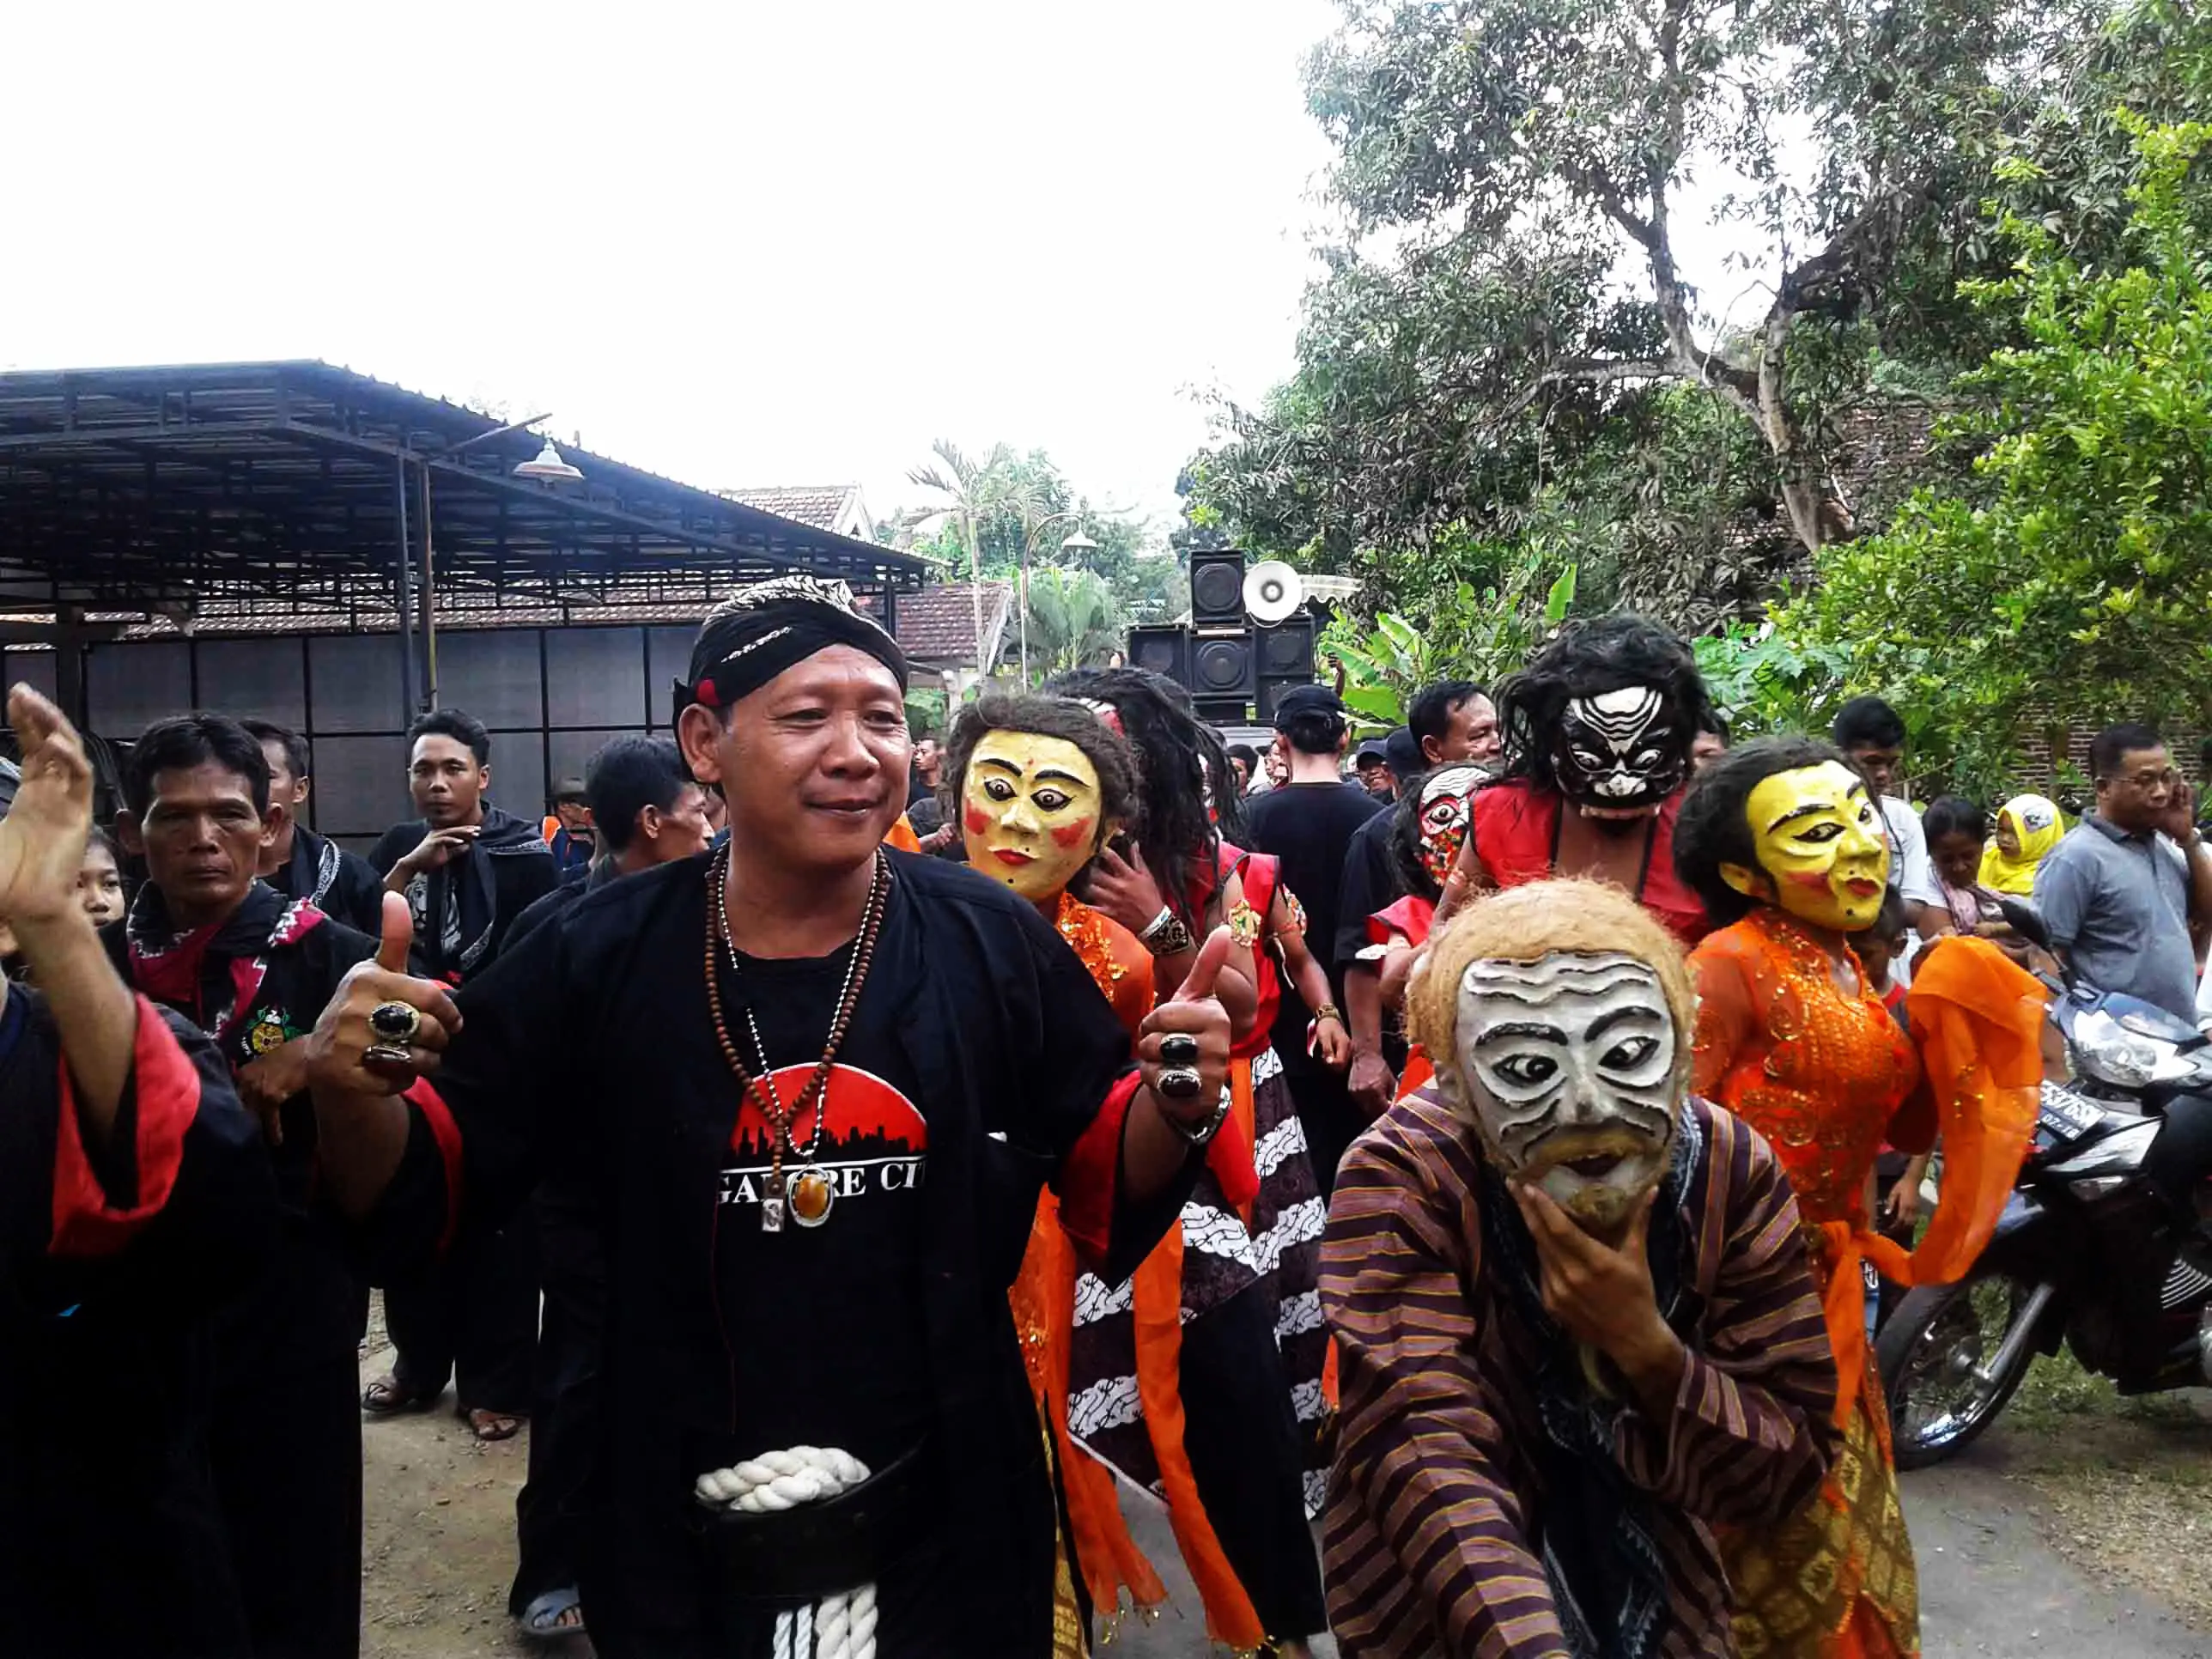 Bapak lurah berjoget dengan para pemain dongkrek, kesenian khas Madiun, Jawa Timur. (Liputan6.com/Dian Kurniawan)